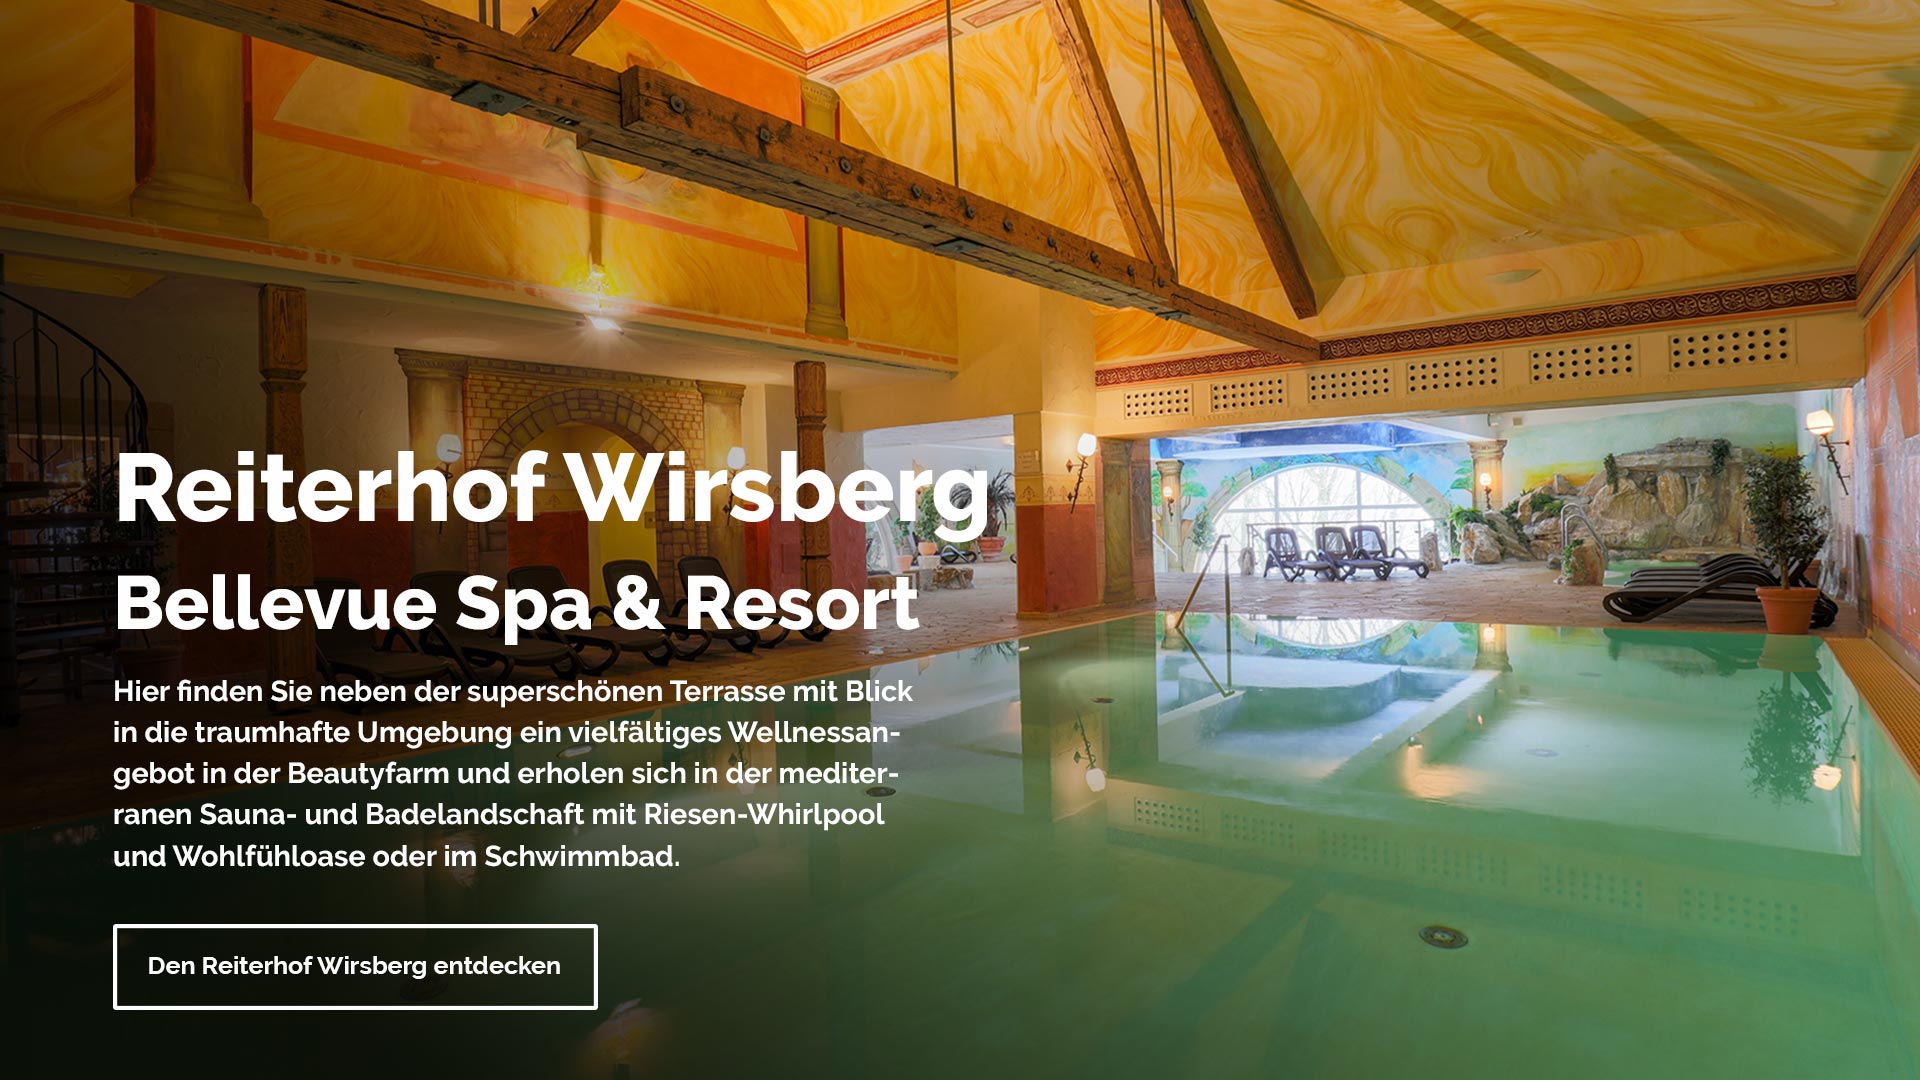 Reiterhof Wirsberg Bellevue Spa & Resort - Hier finden Sie neben der superschönen Terrasse mit Blick in die traumhafte Umgebung ein vielfältiges Wellnesssangebot in der Beauttyfarm und erholen sich in der mediterranen Sauna- und Badelandschaft mit Riesen-Whirlpool und Wohlfühloase oder im Schwimmbad.